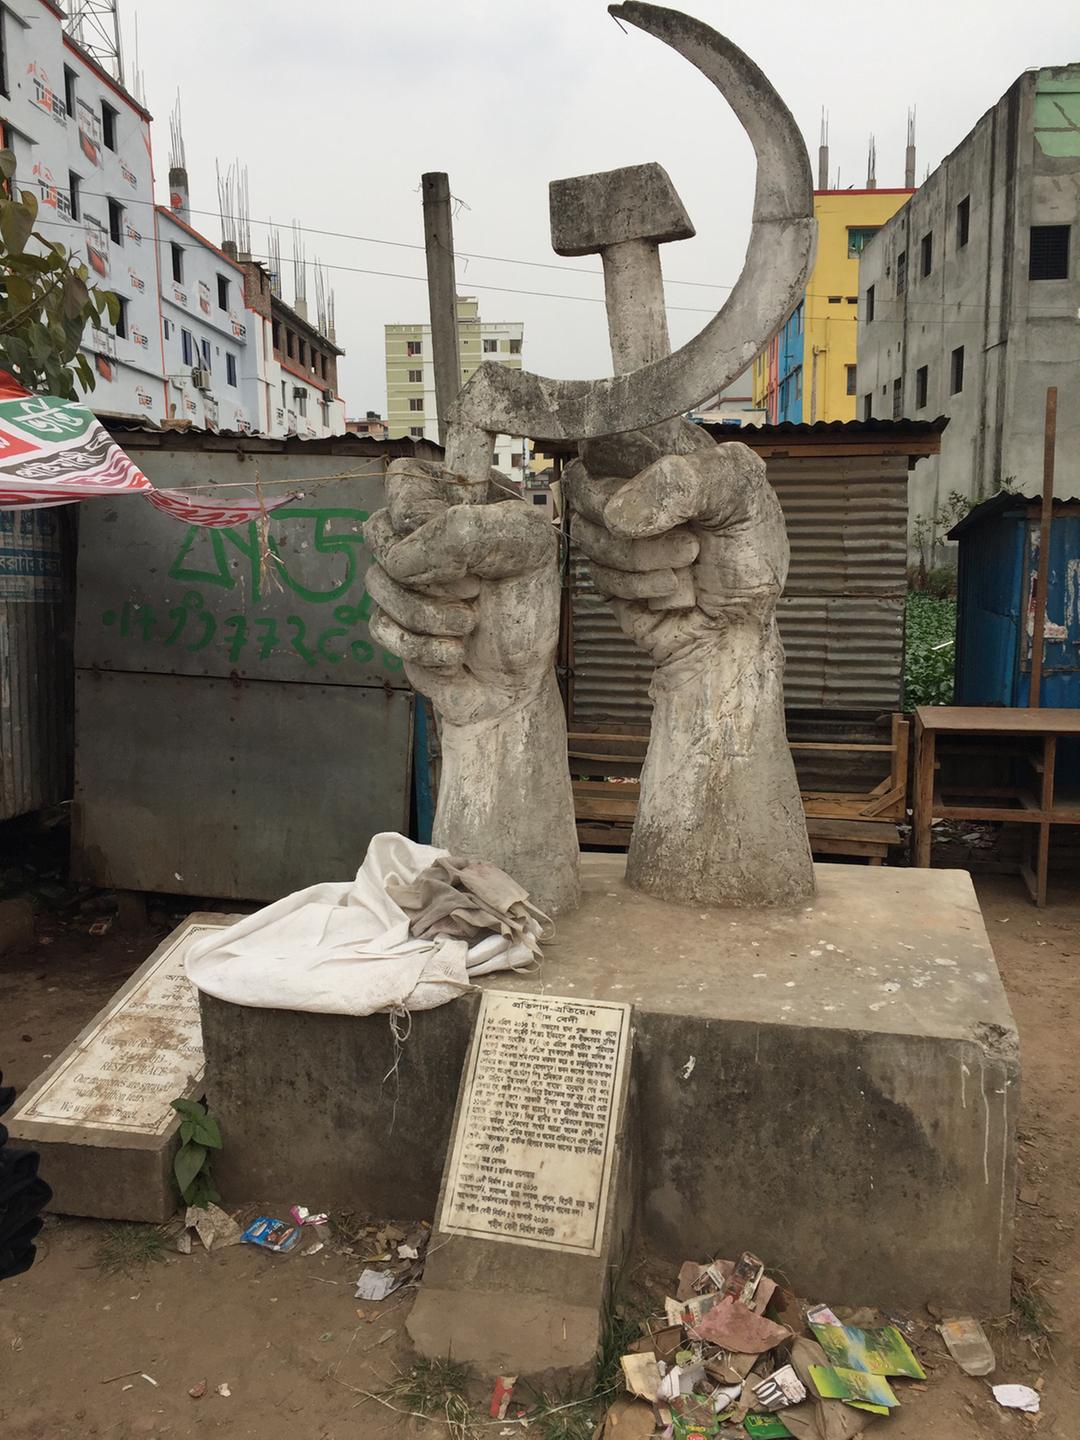 "Unsere Erinnerungen sind mit Milliarden von Tränen behaftet", steht neben dem Mahnmal für die getöteten ArbeiterInnen von Dhaka geschrieben.